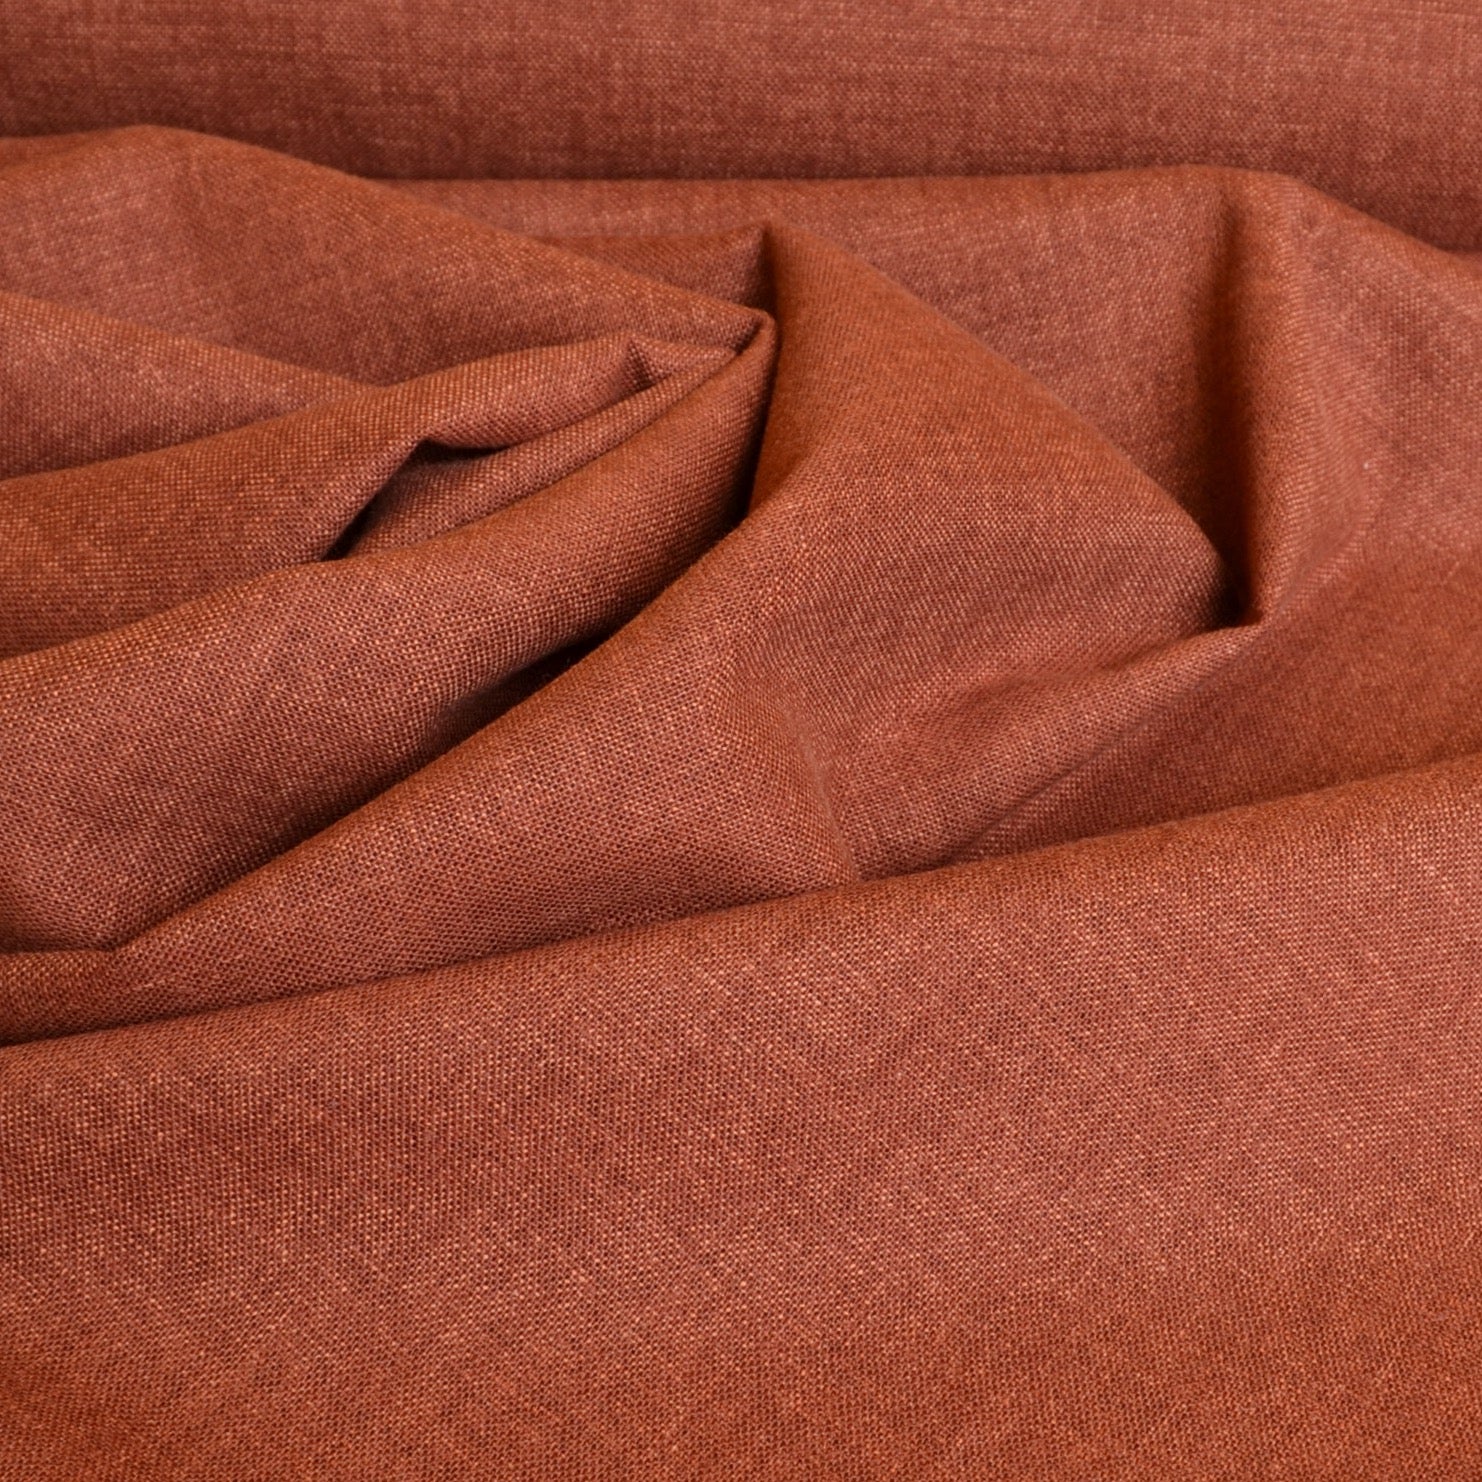 Morikiku cotton fabric